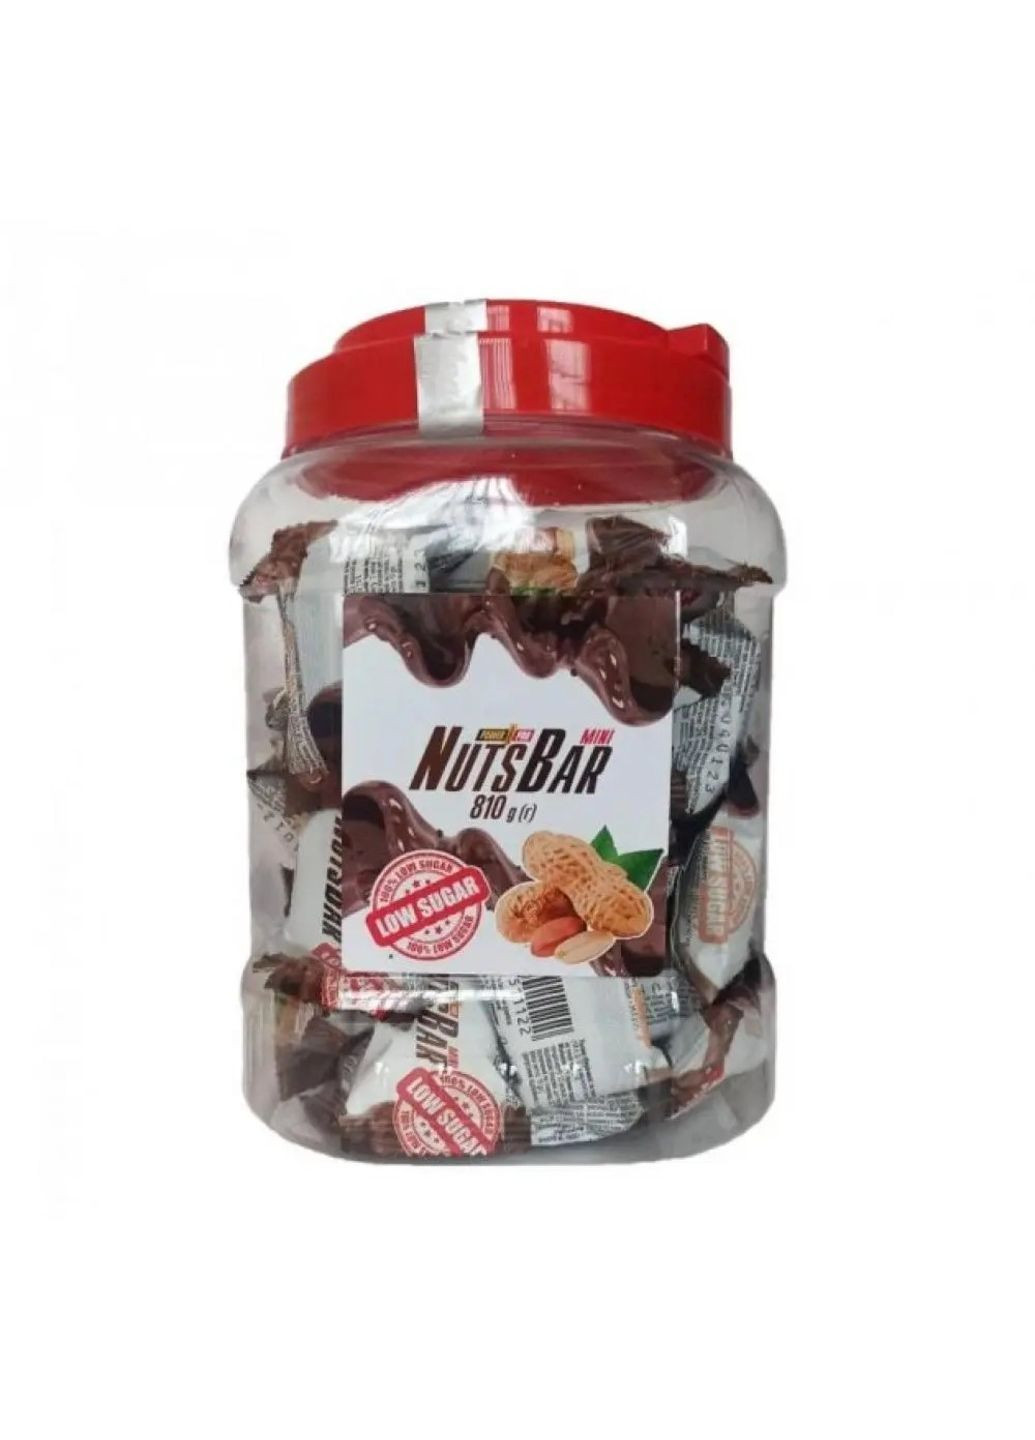 Nuts bar mini LOW sugar free - 810g шоколадные глазированные конфеты Power Pro (291124789)